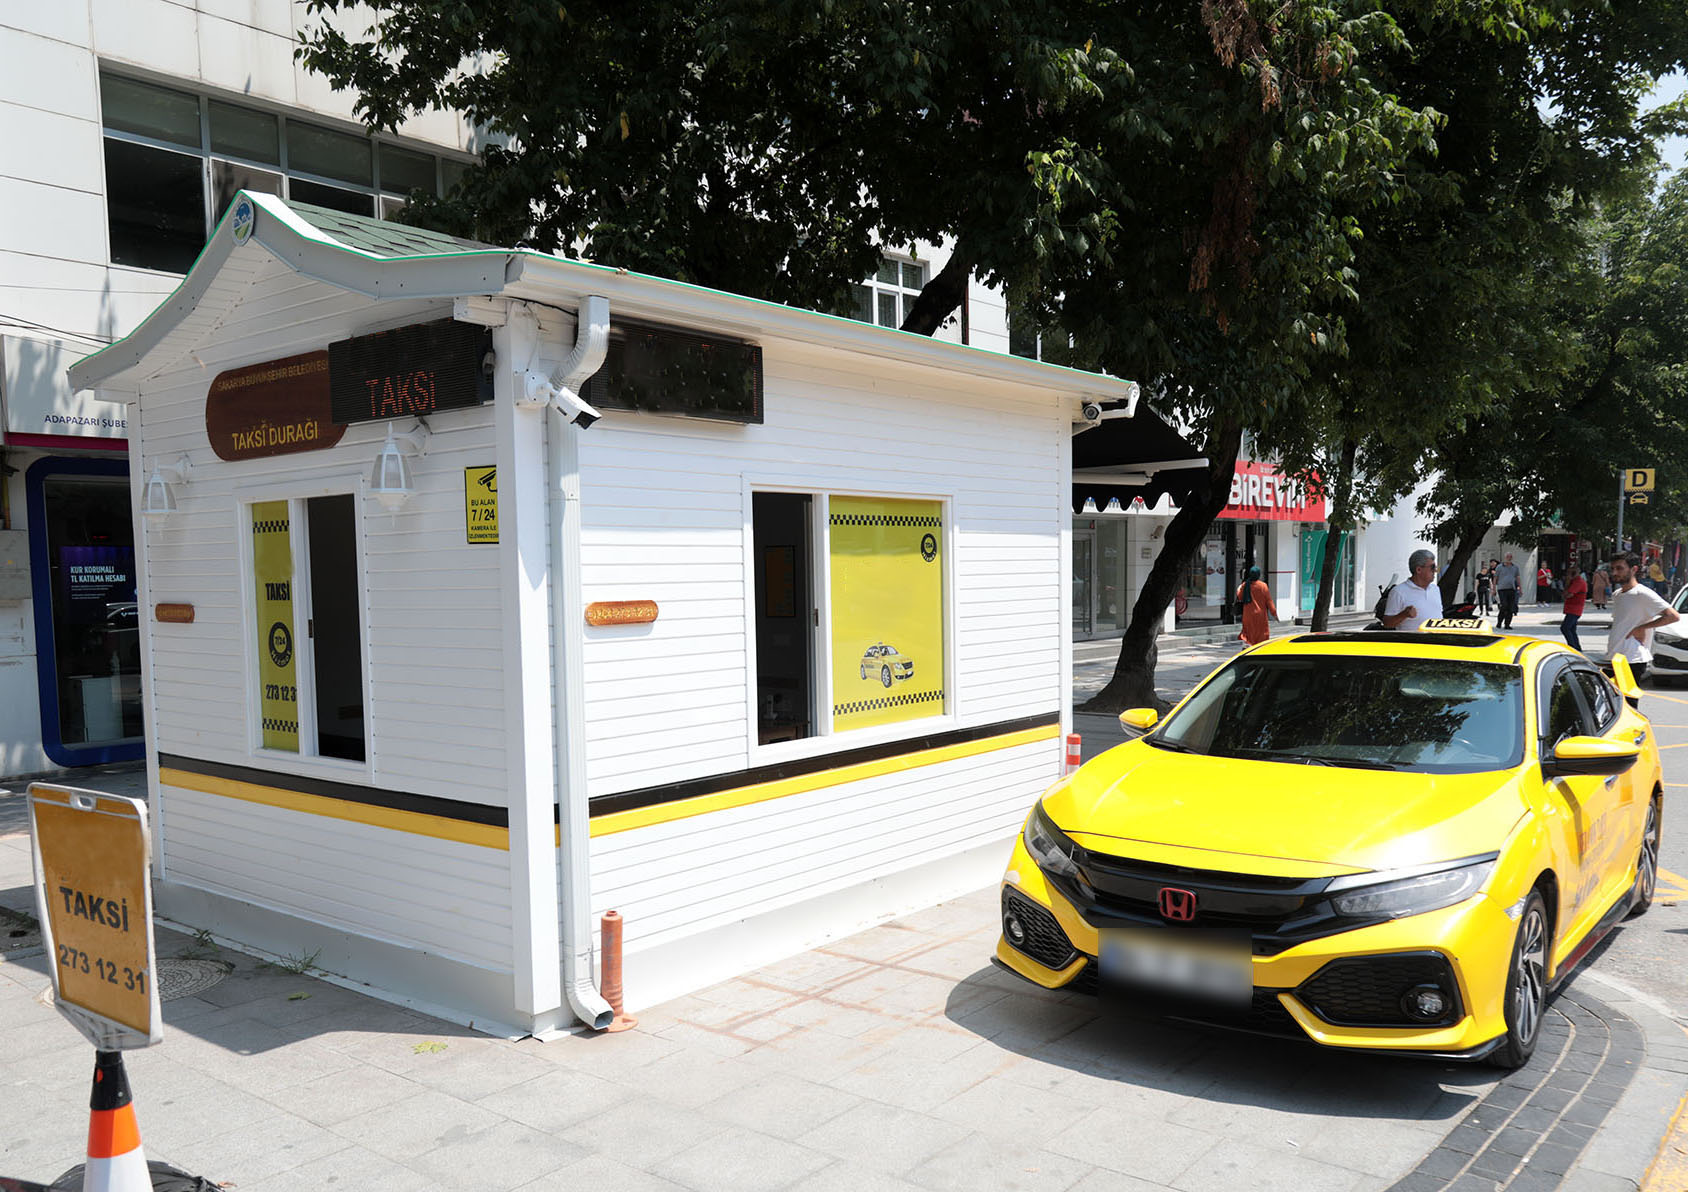 Sakarya Büyükşehir Belediyesi, 10 ticari taksi durak yerinin işletilmesi için ihaleye çıkıyor